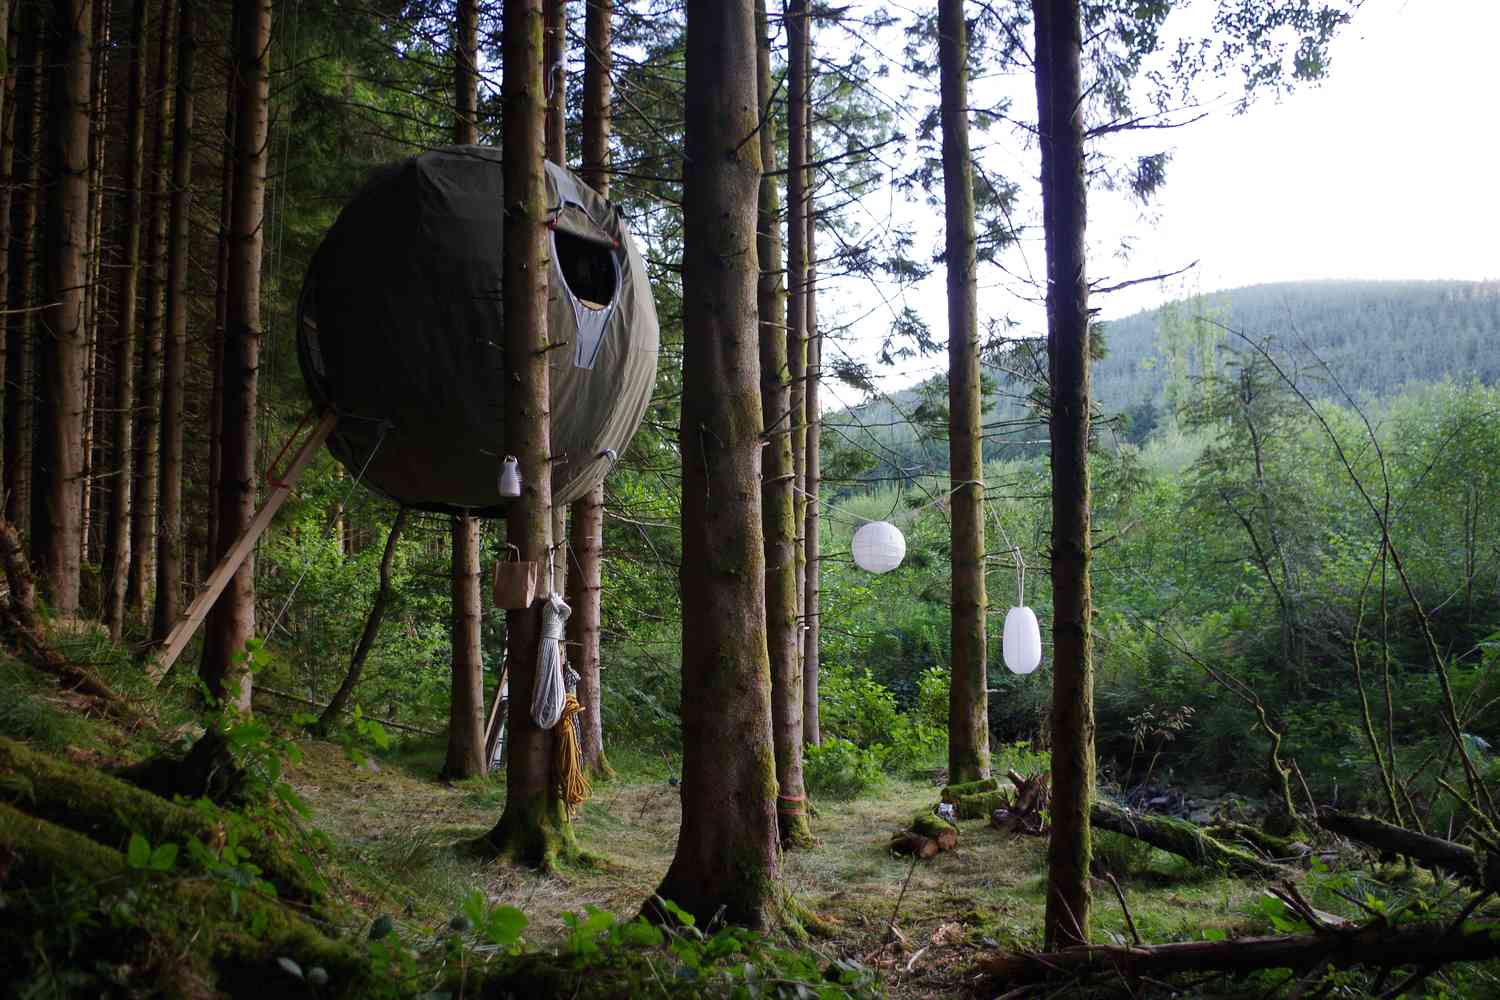 Structure en forme de sphère suspendue dans les arbres au-dessus du sol de la forêt